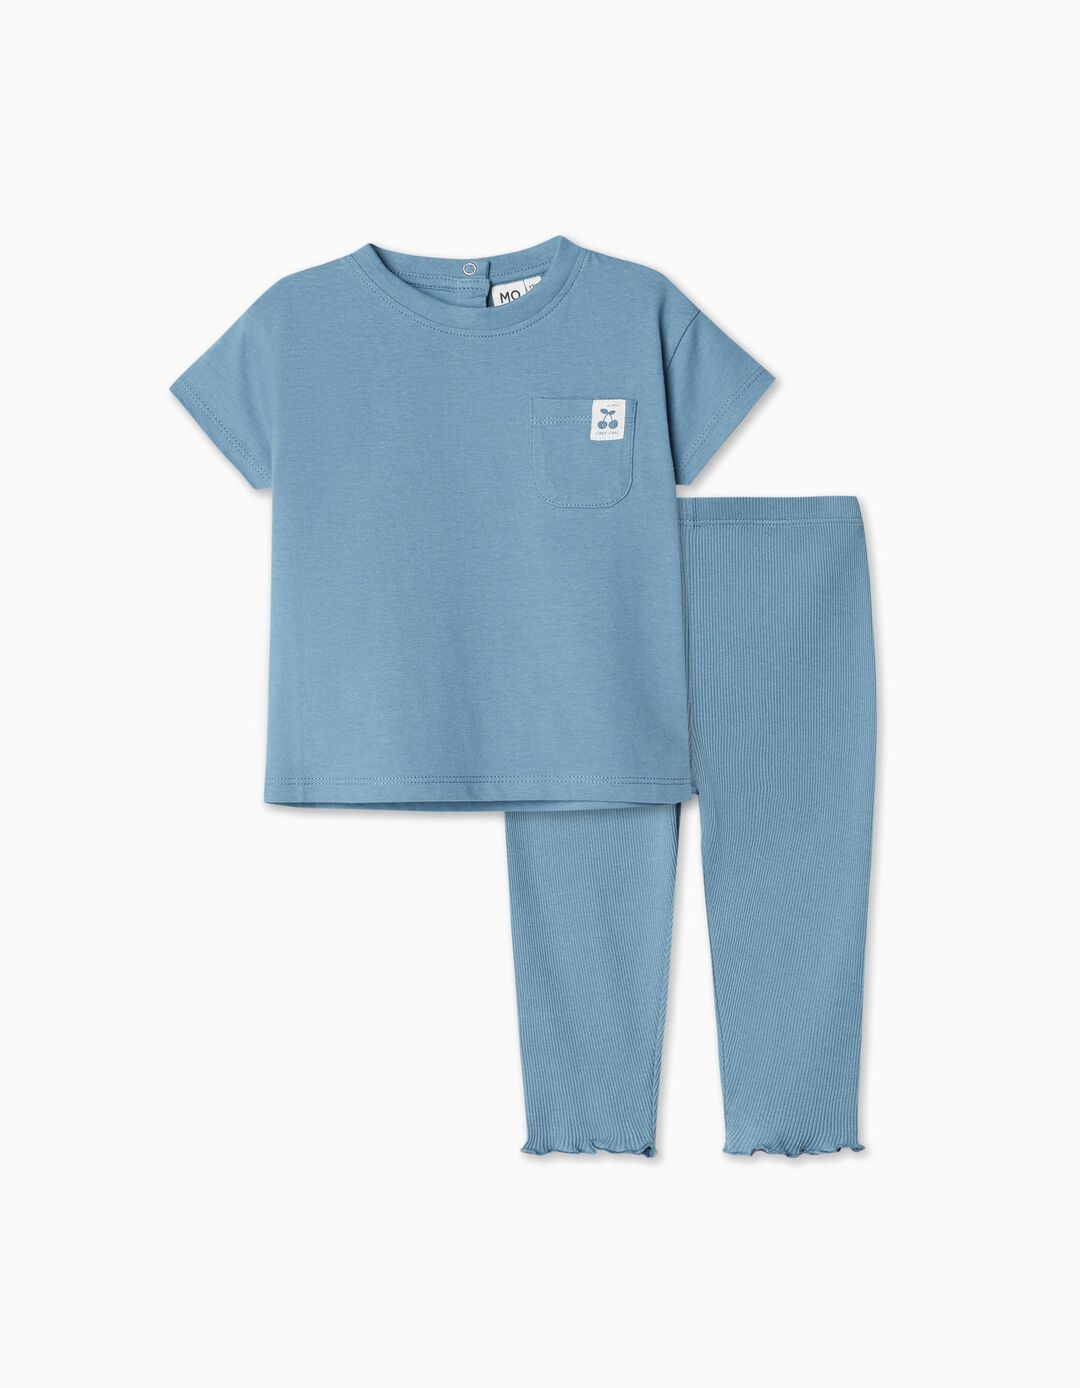 T-shirt + Leggings Set, Baby Girl, Blue